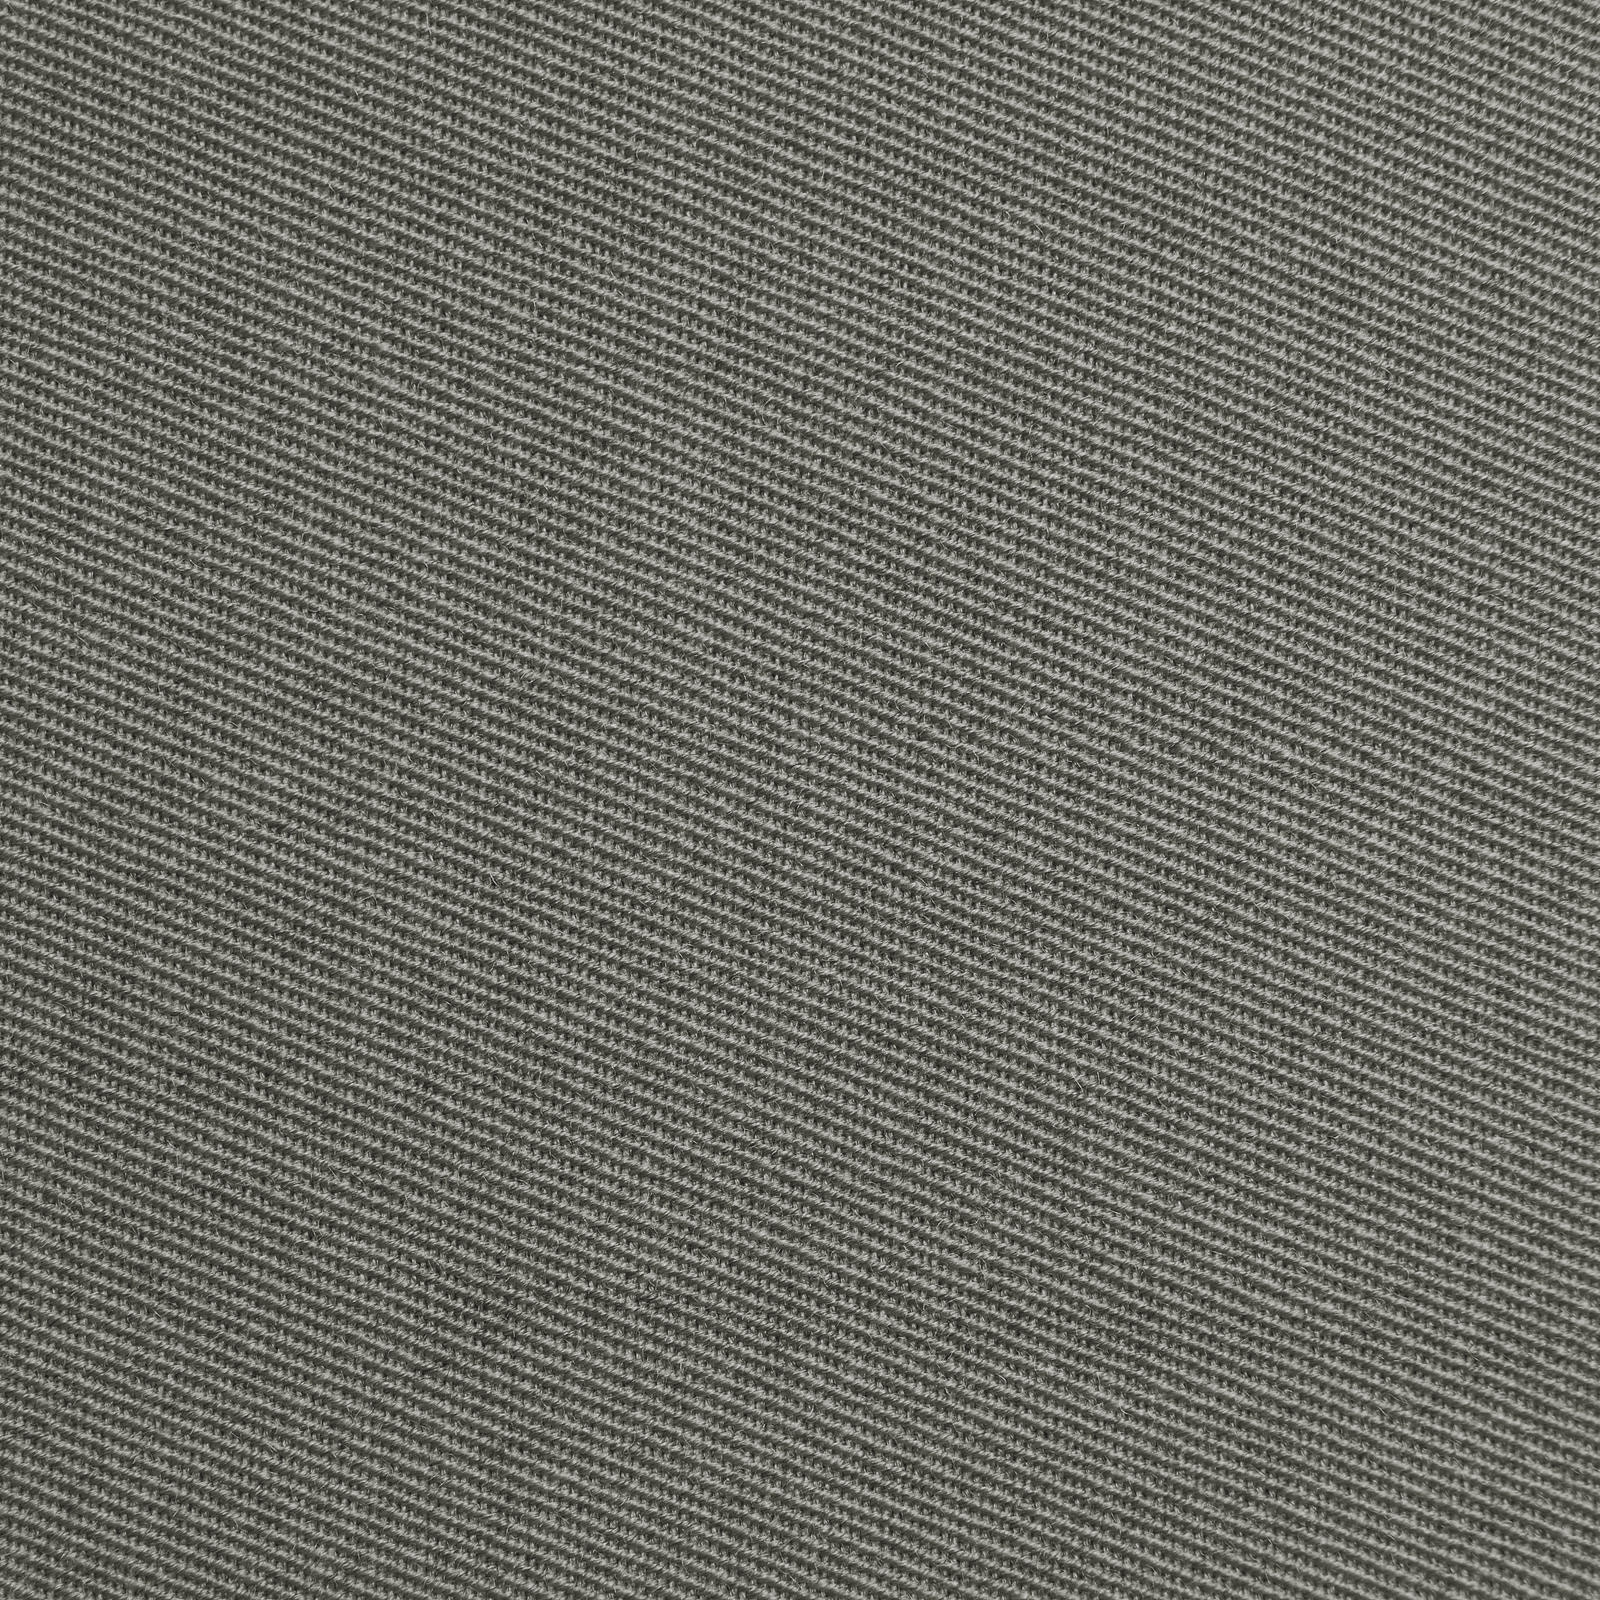 Franziska - paño de lana / paño uniforme (gris)